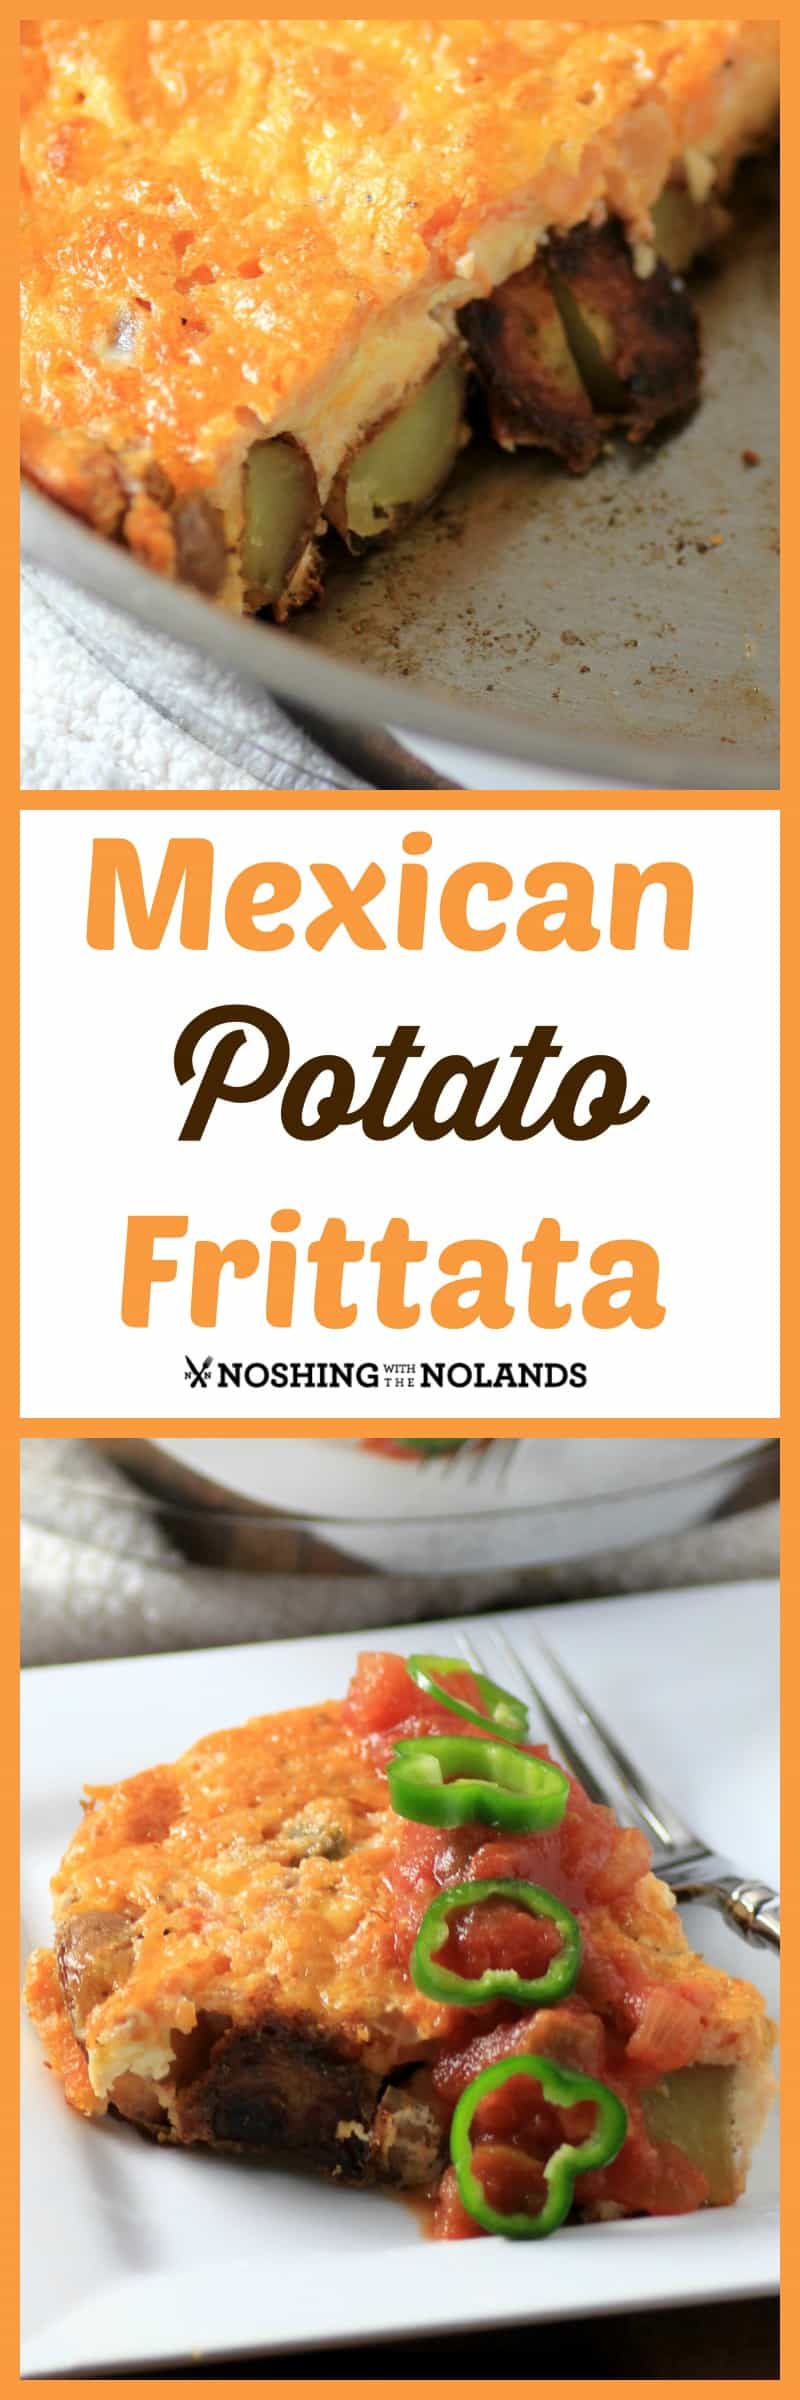 Mexican Potato Frittata